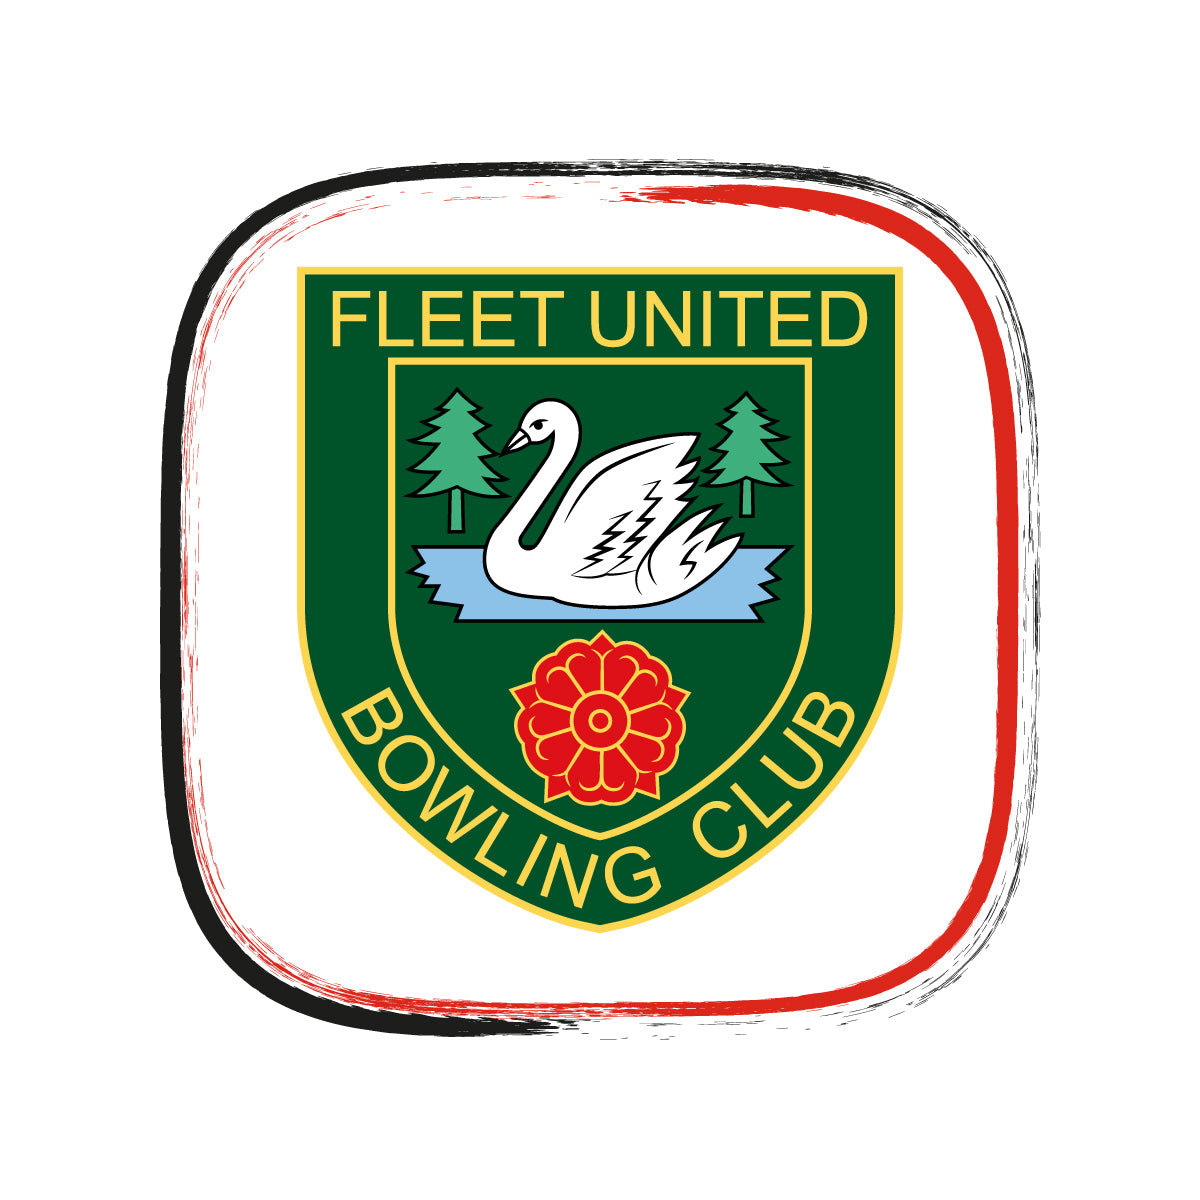 Fleet United Bowling Club